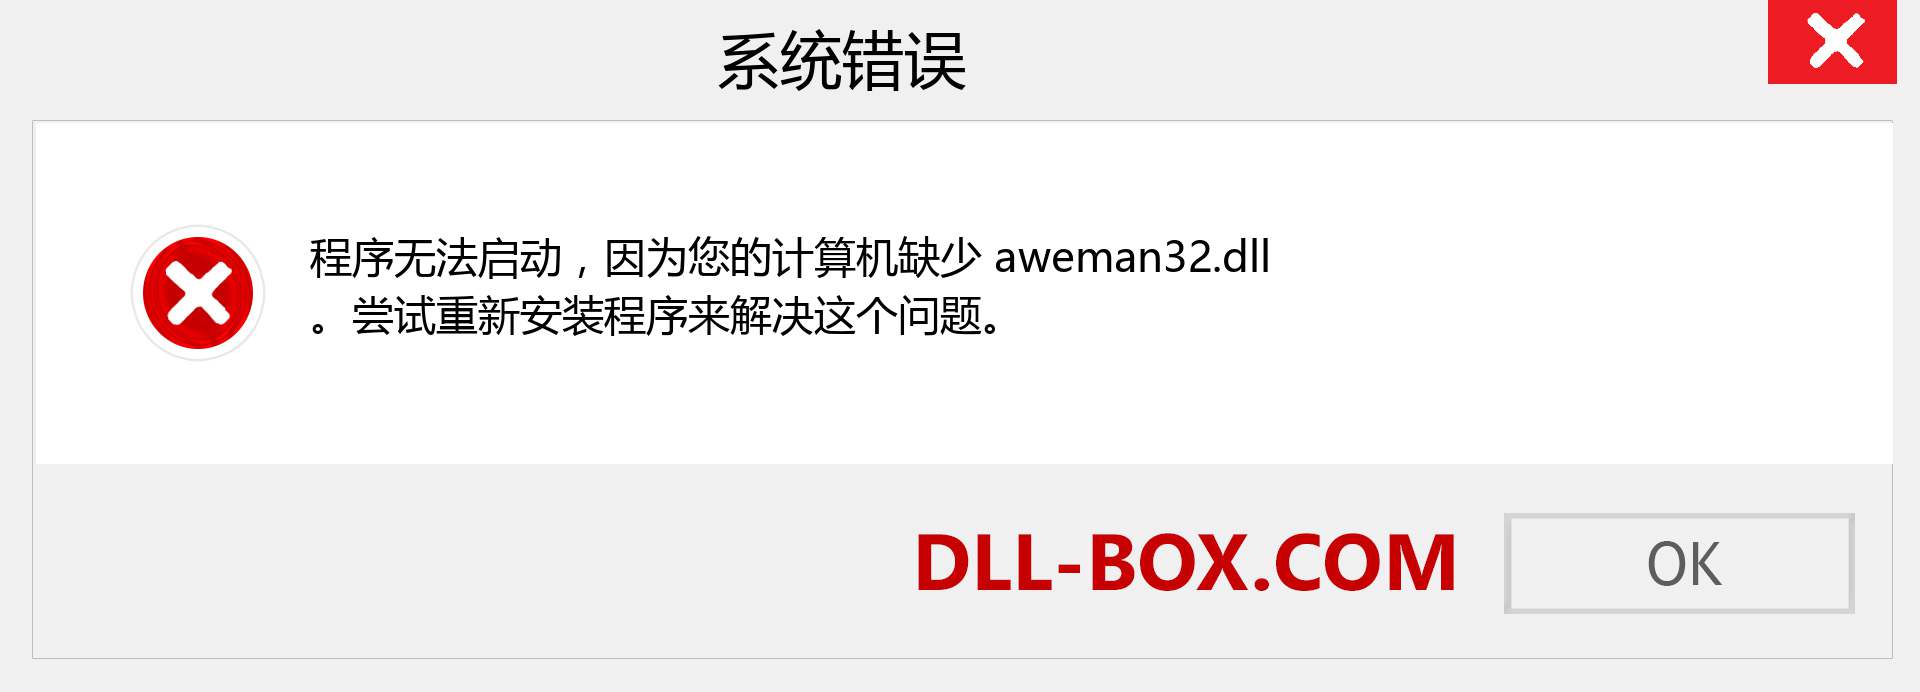 aweman32.dll 文件丢失？。 适用于 Windows 7、8、10 的下载 - 修复 Windows、照片、图像上的 aweman32 dll 丢失错误